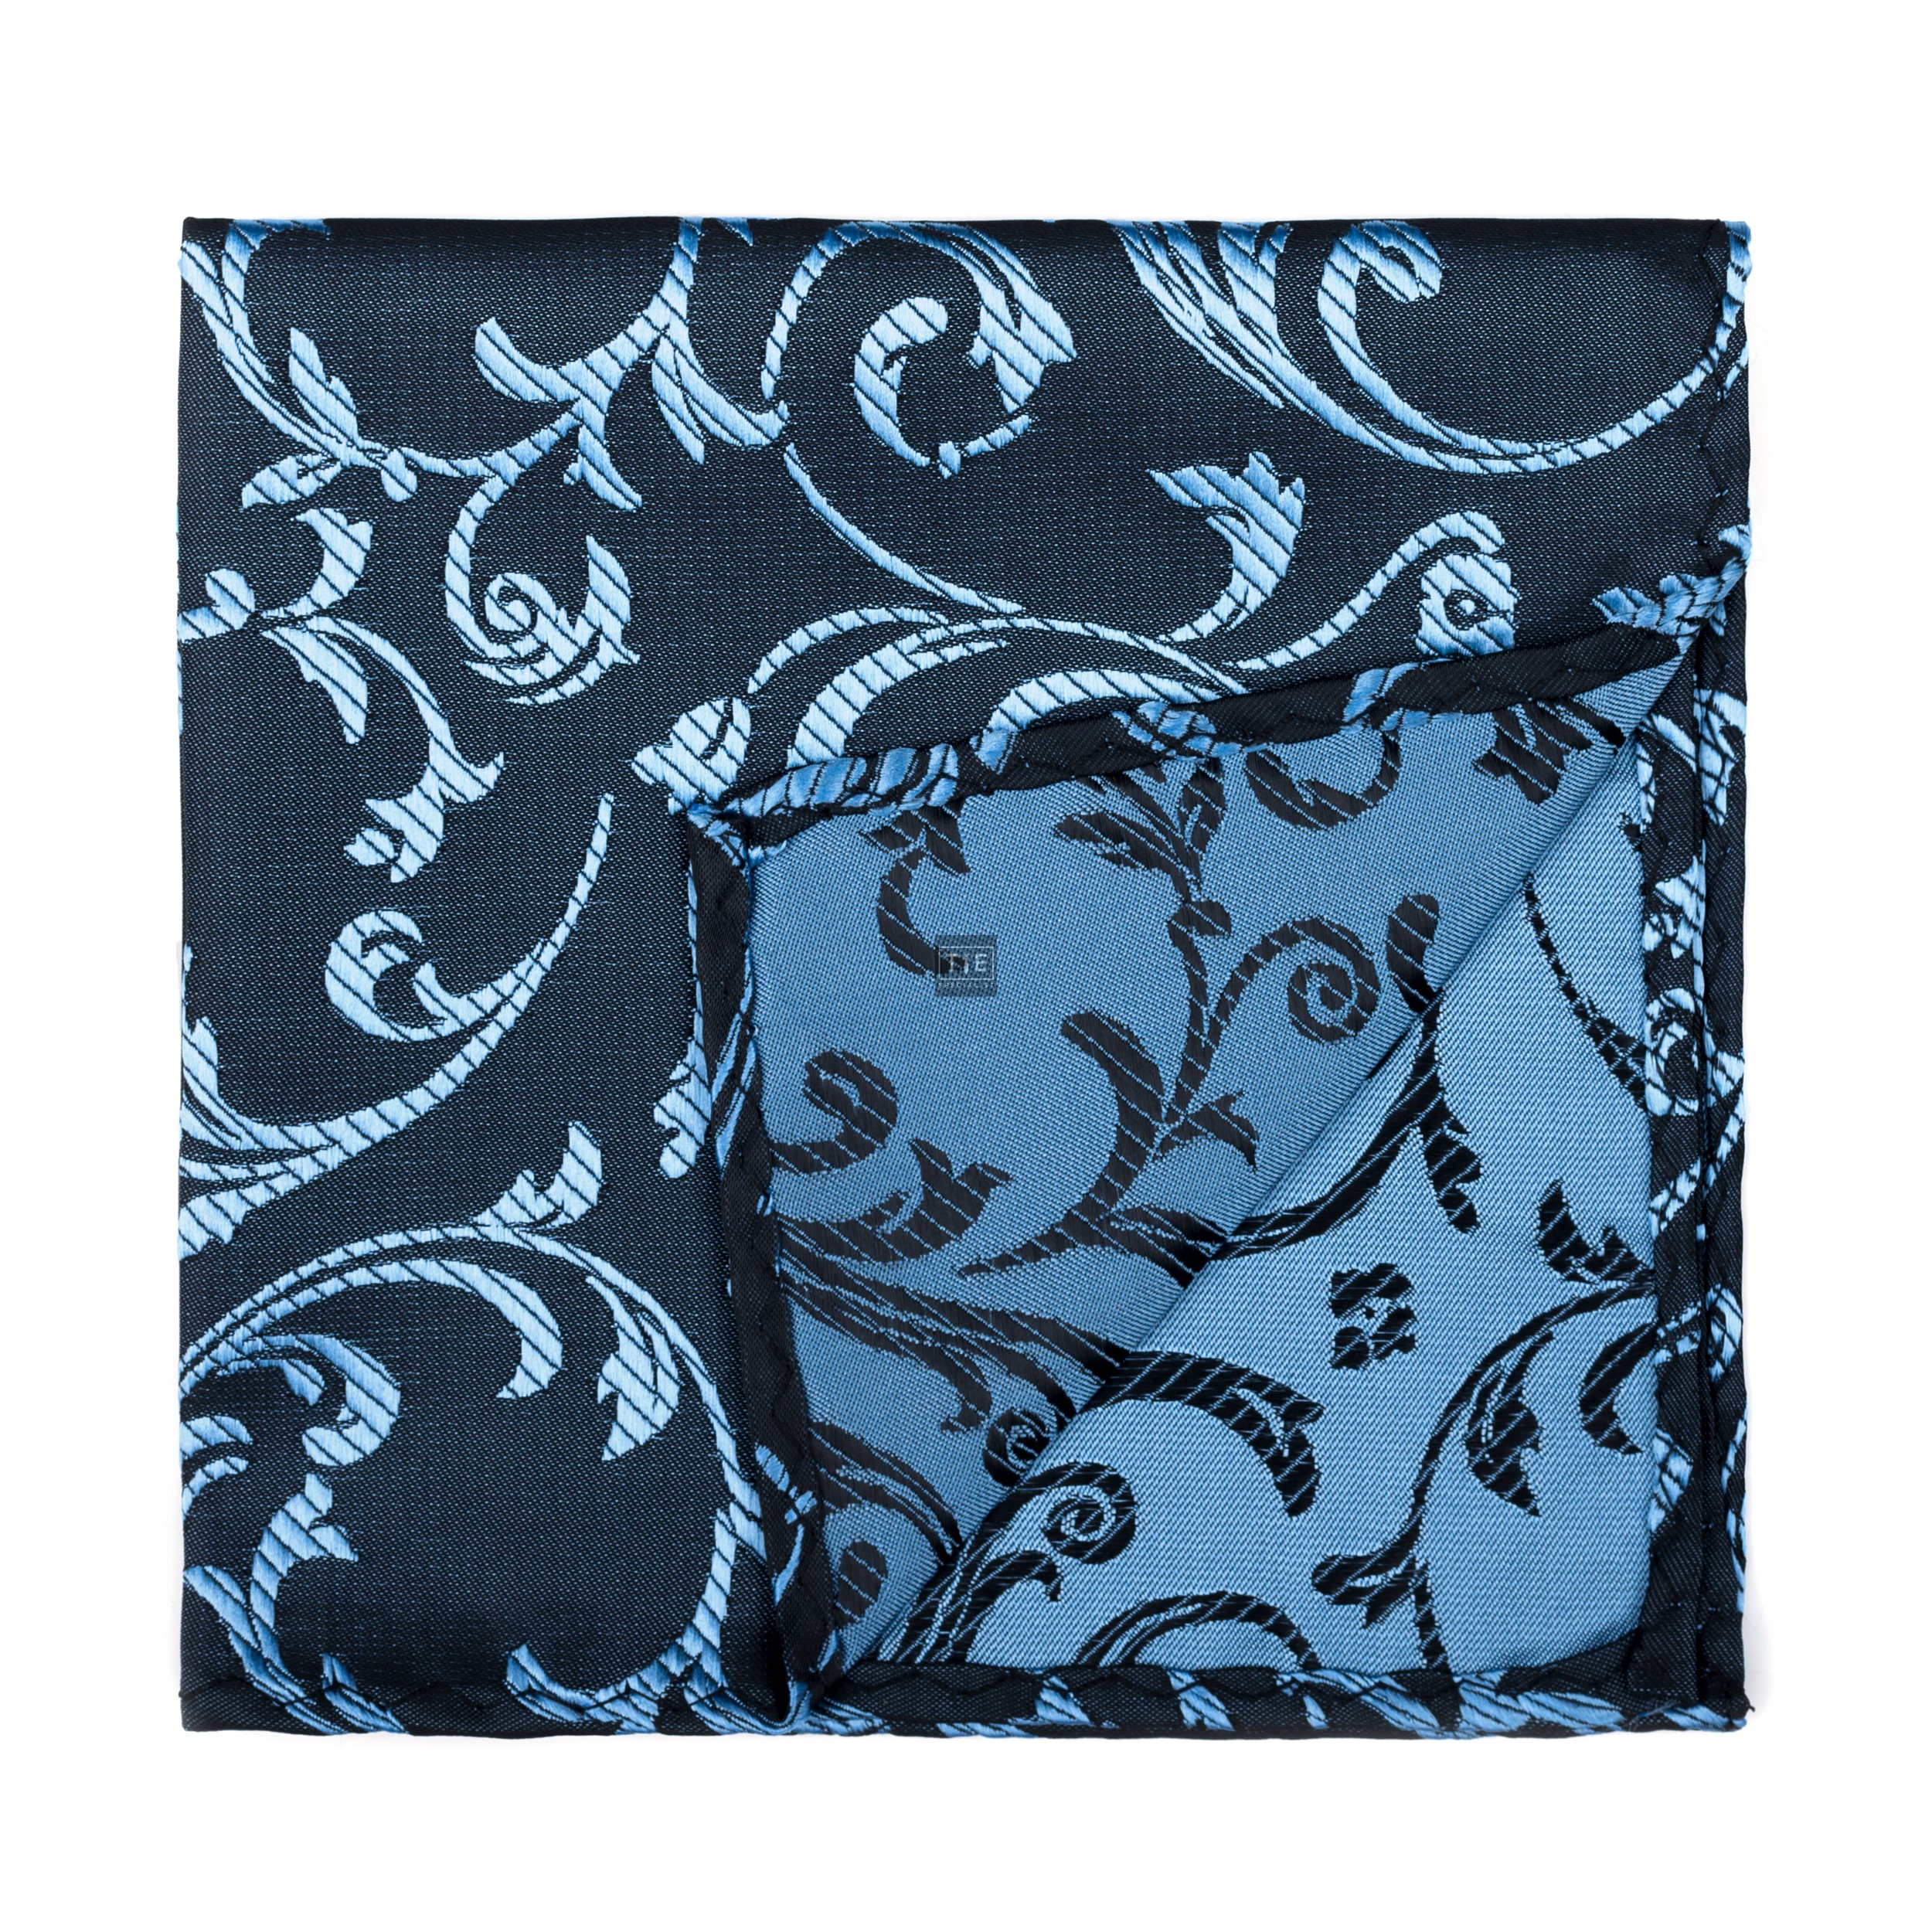 Morning Blue on Black Swirl Leaf Pocket Square